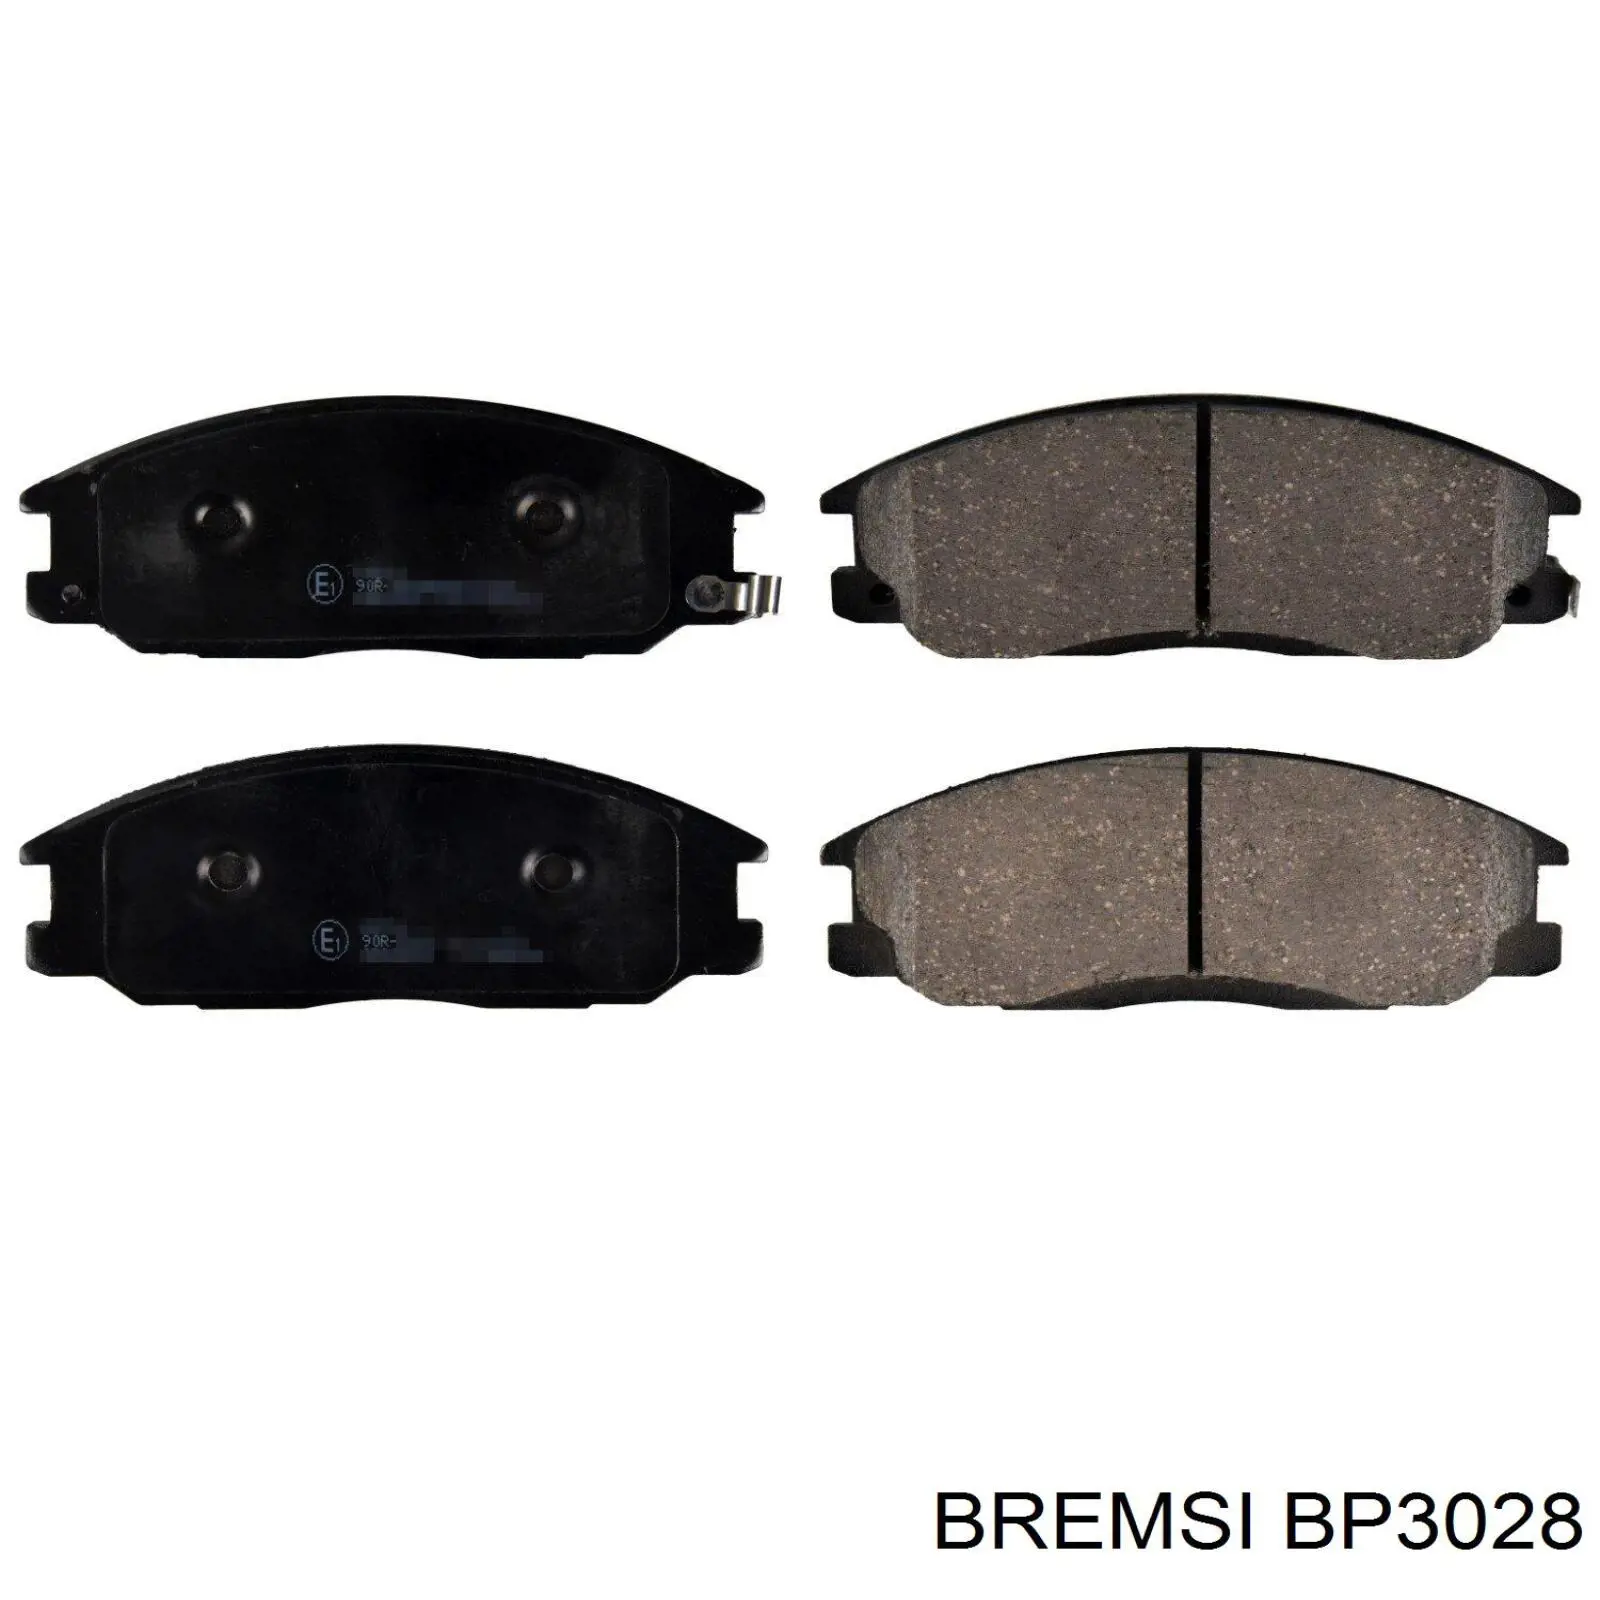 BP3028 Bremsi sapatas do freio dianteiras de disco